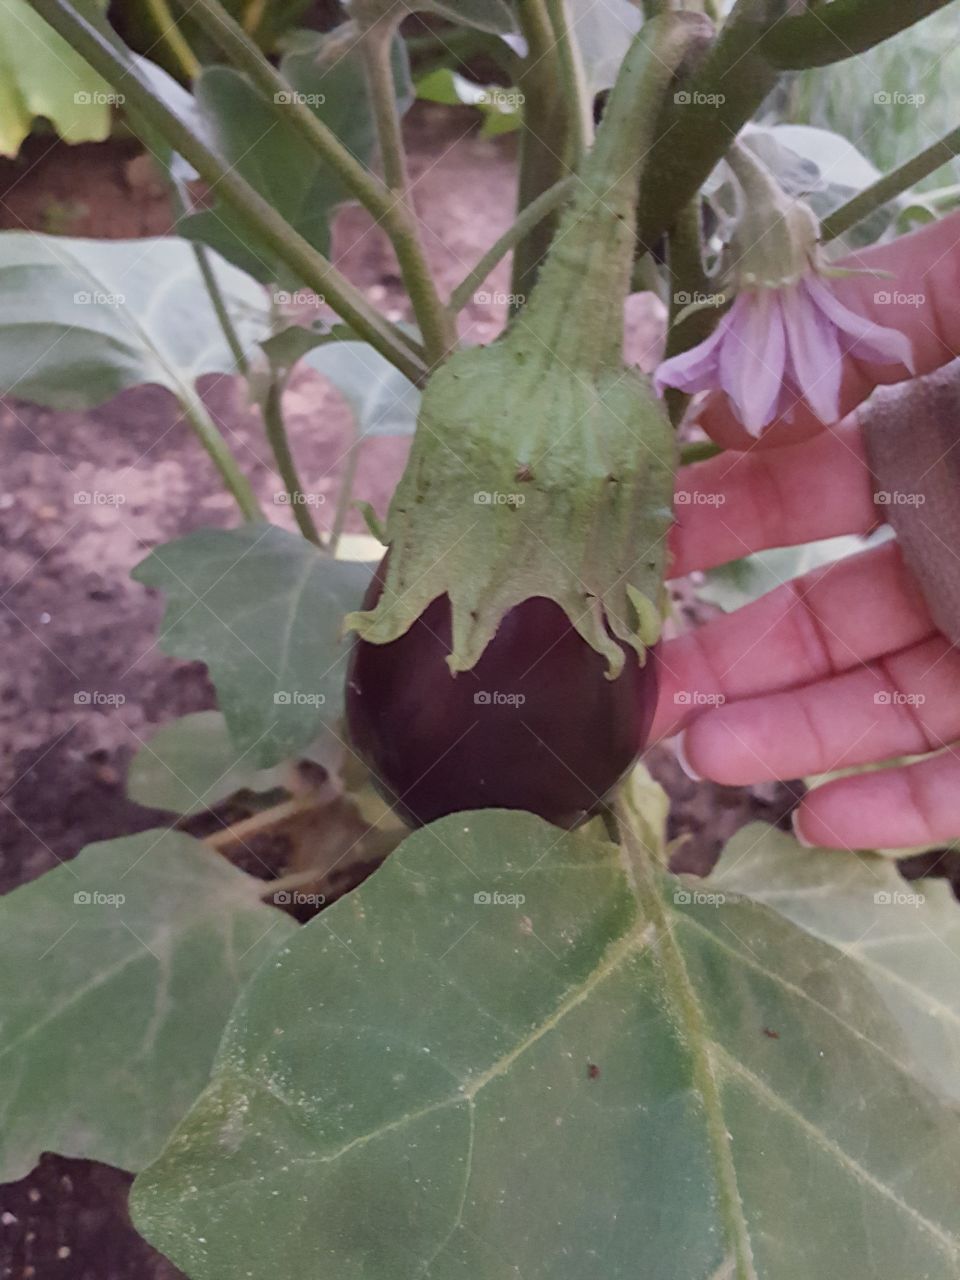 Eggplant Iplant Ueat!